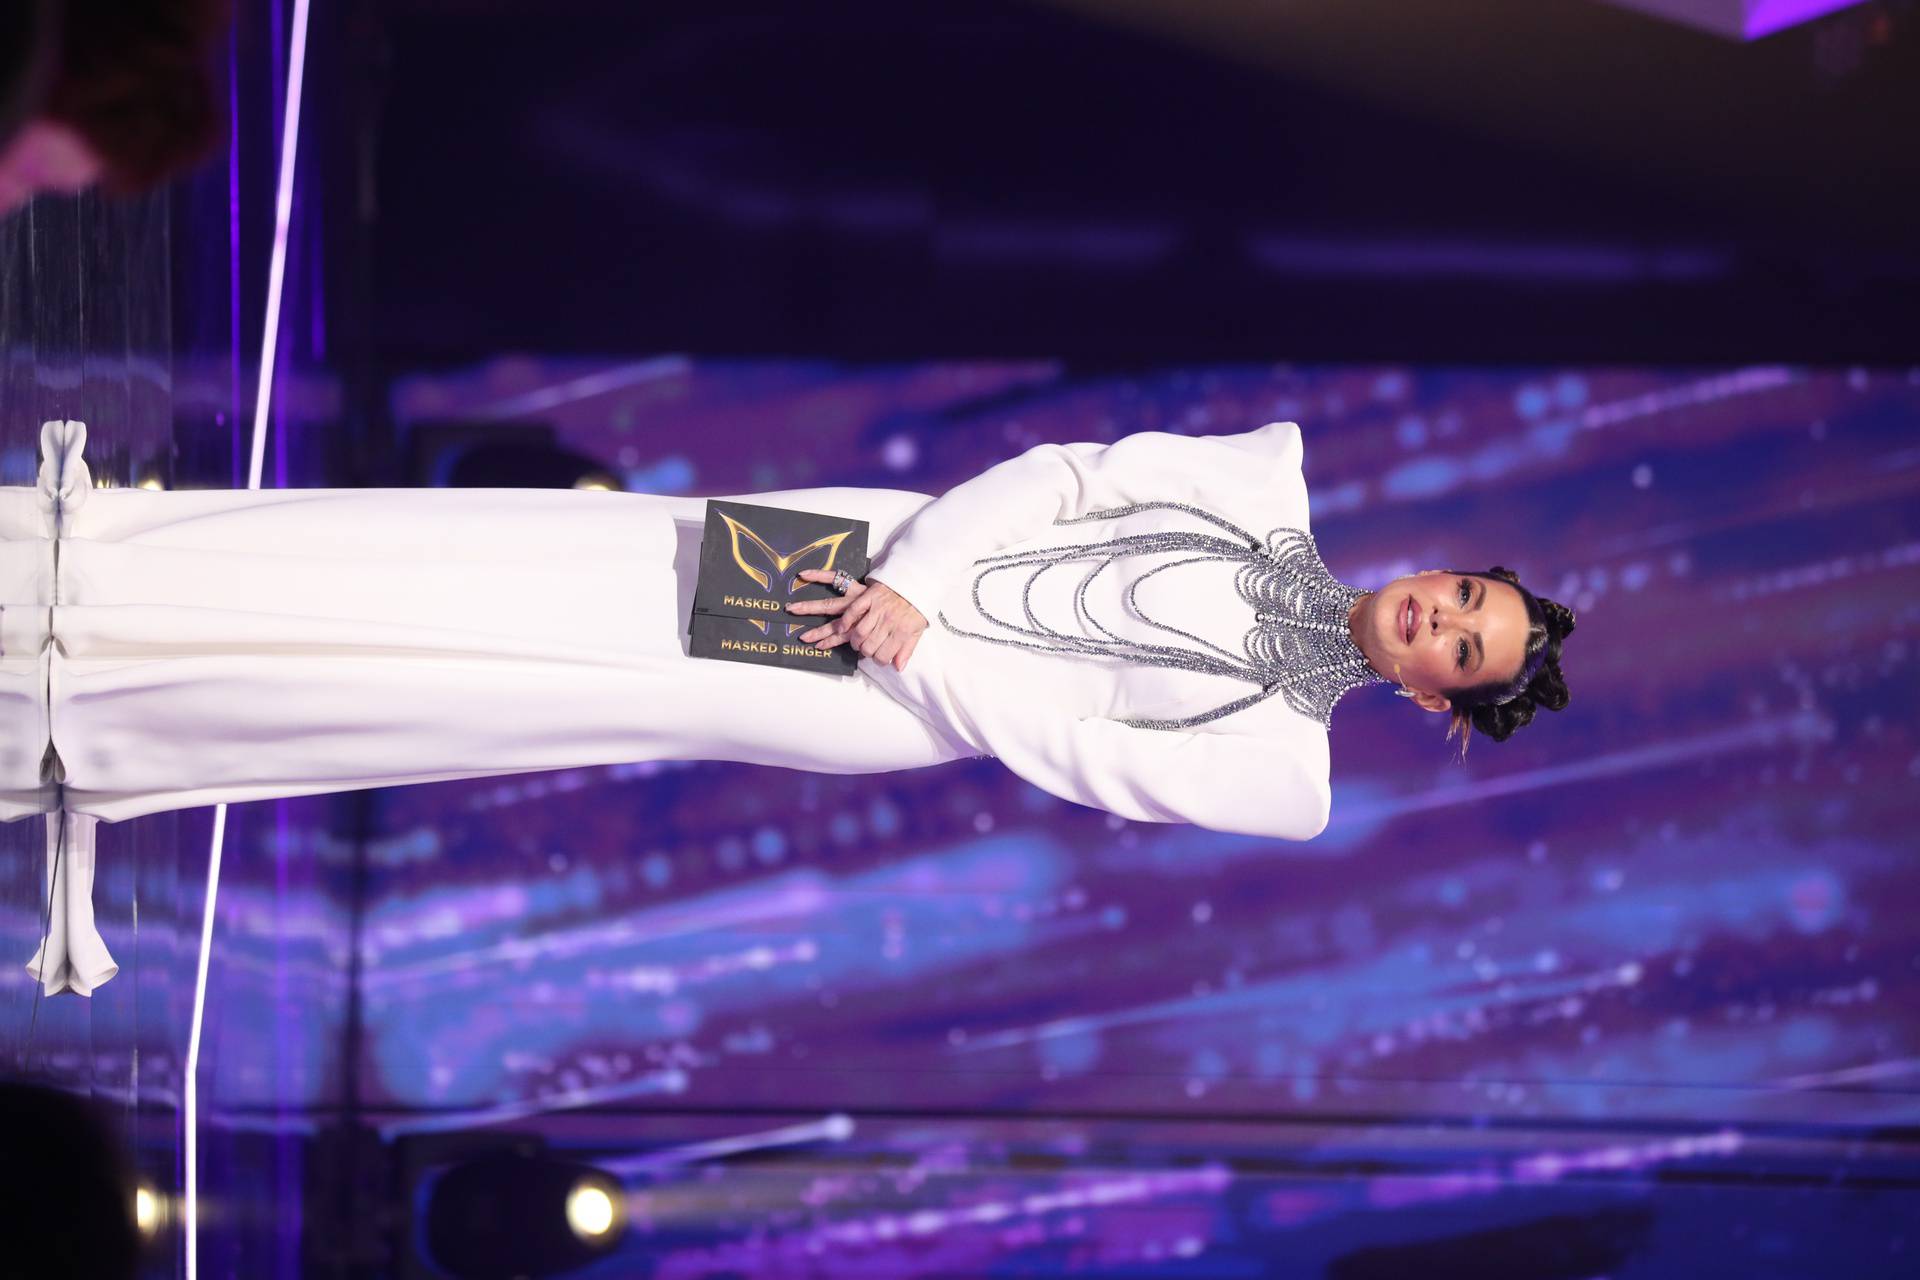 Glamurozno i otmjeno: Nikolina Pišek u bijeloj haljini do poda zablistala u polufinalnoj večeri